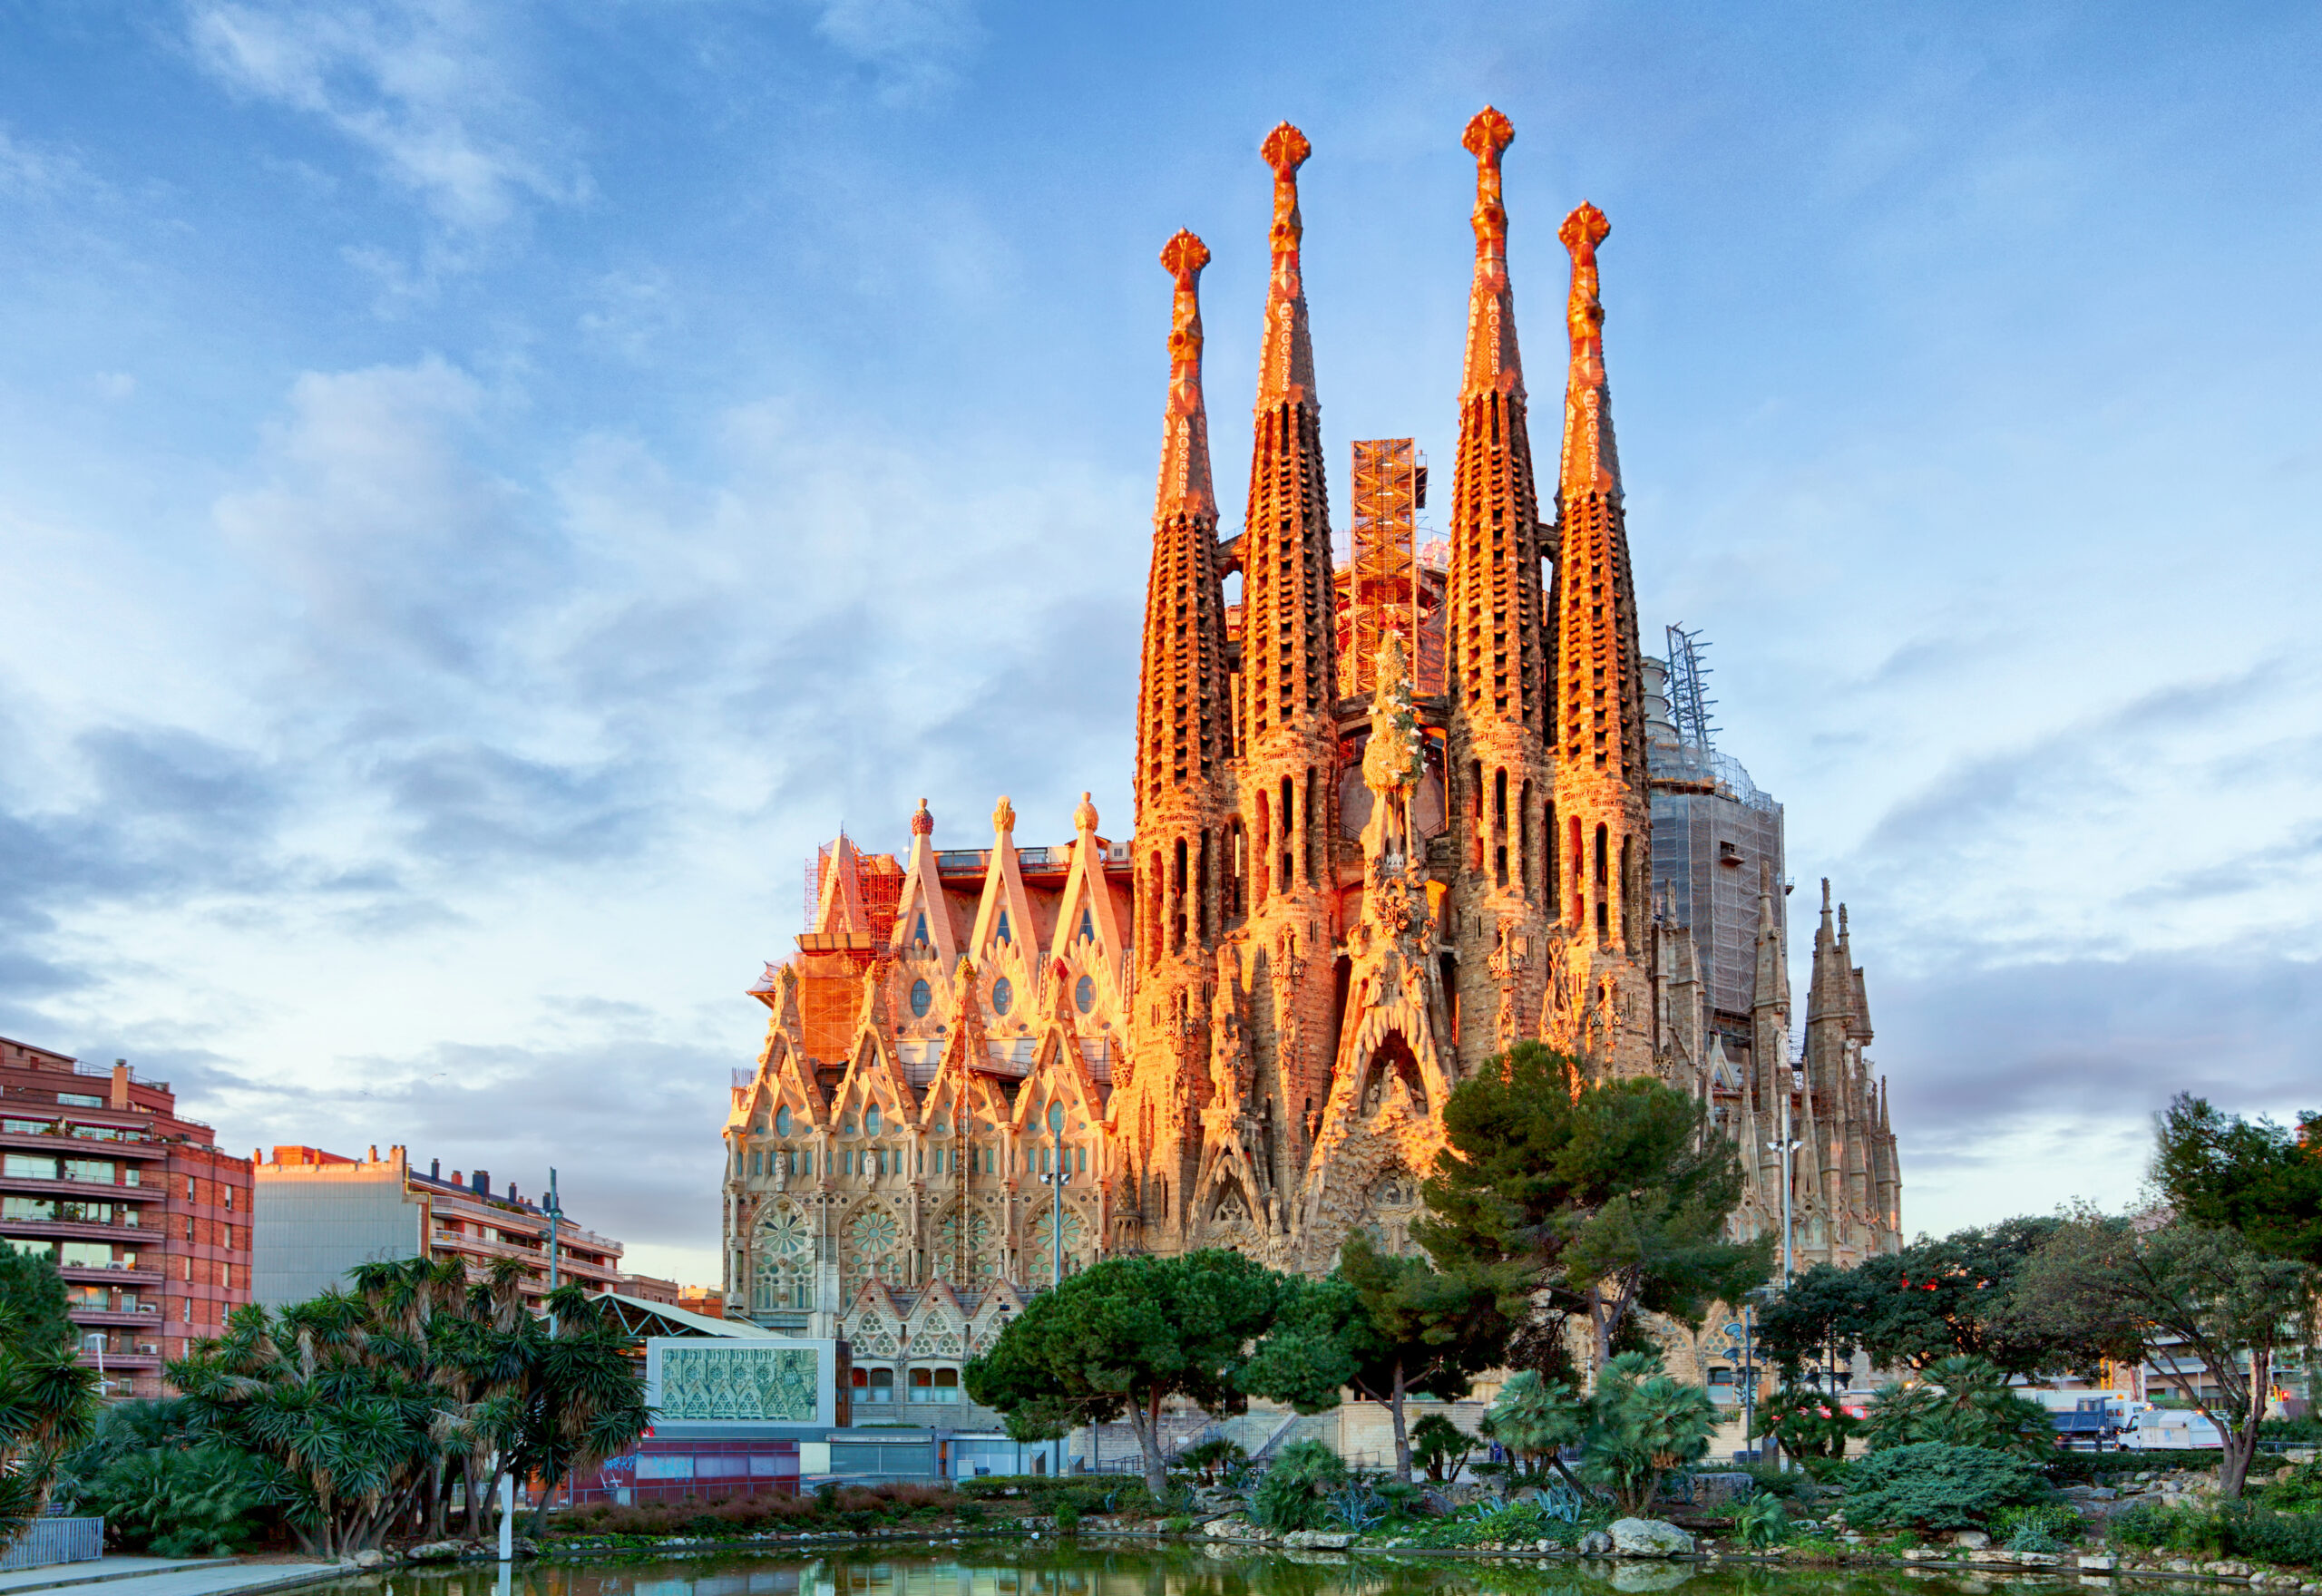 La Sagrada Familia - the impressive cathedral designed by Gaudi,